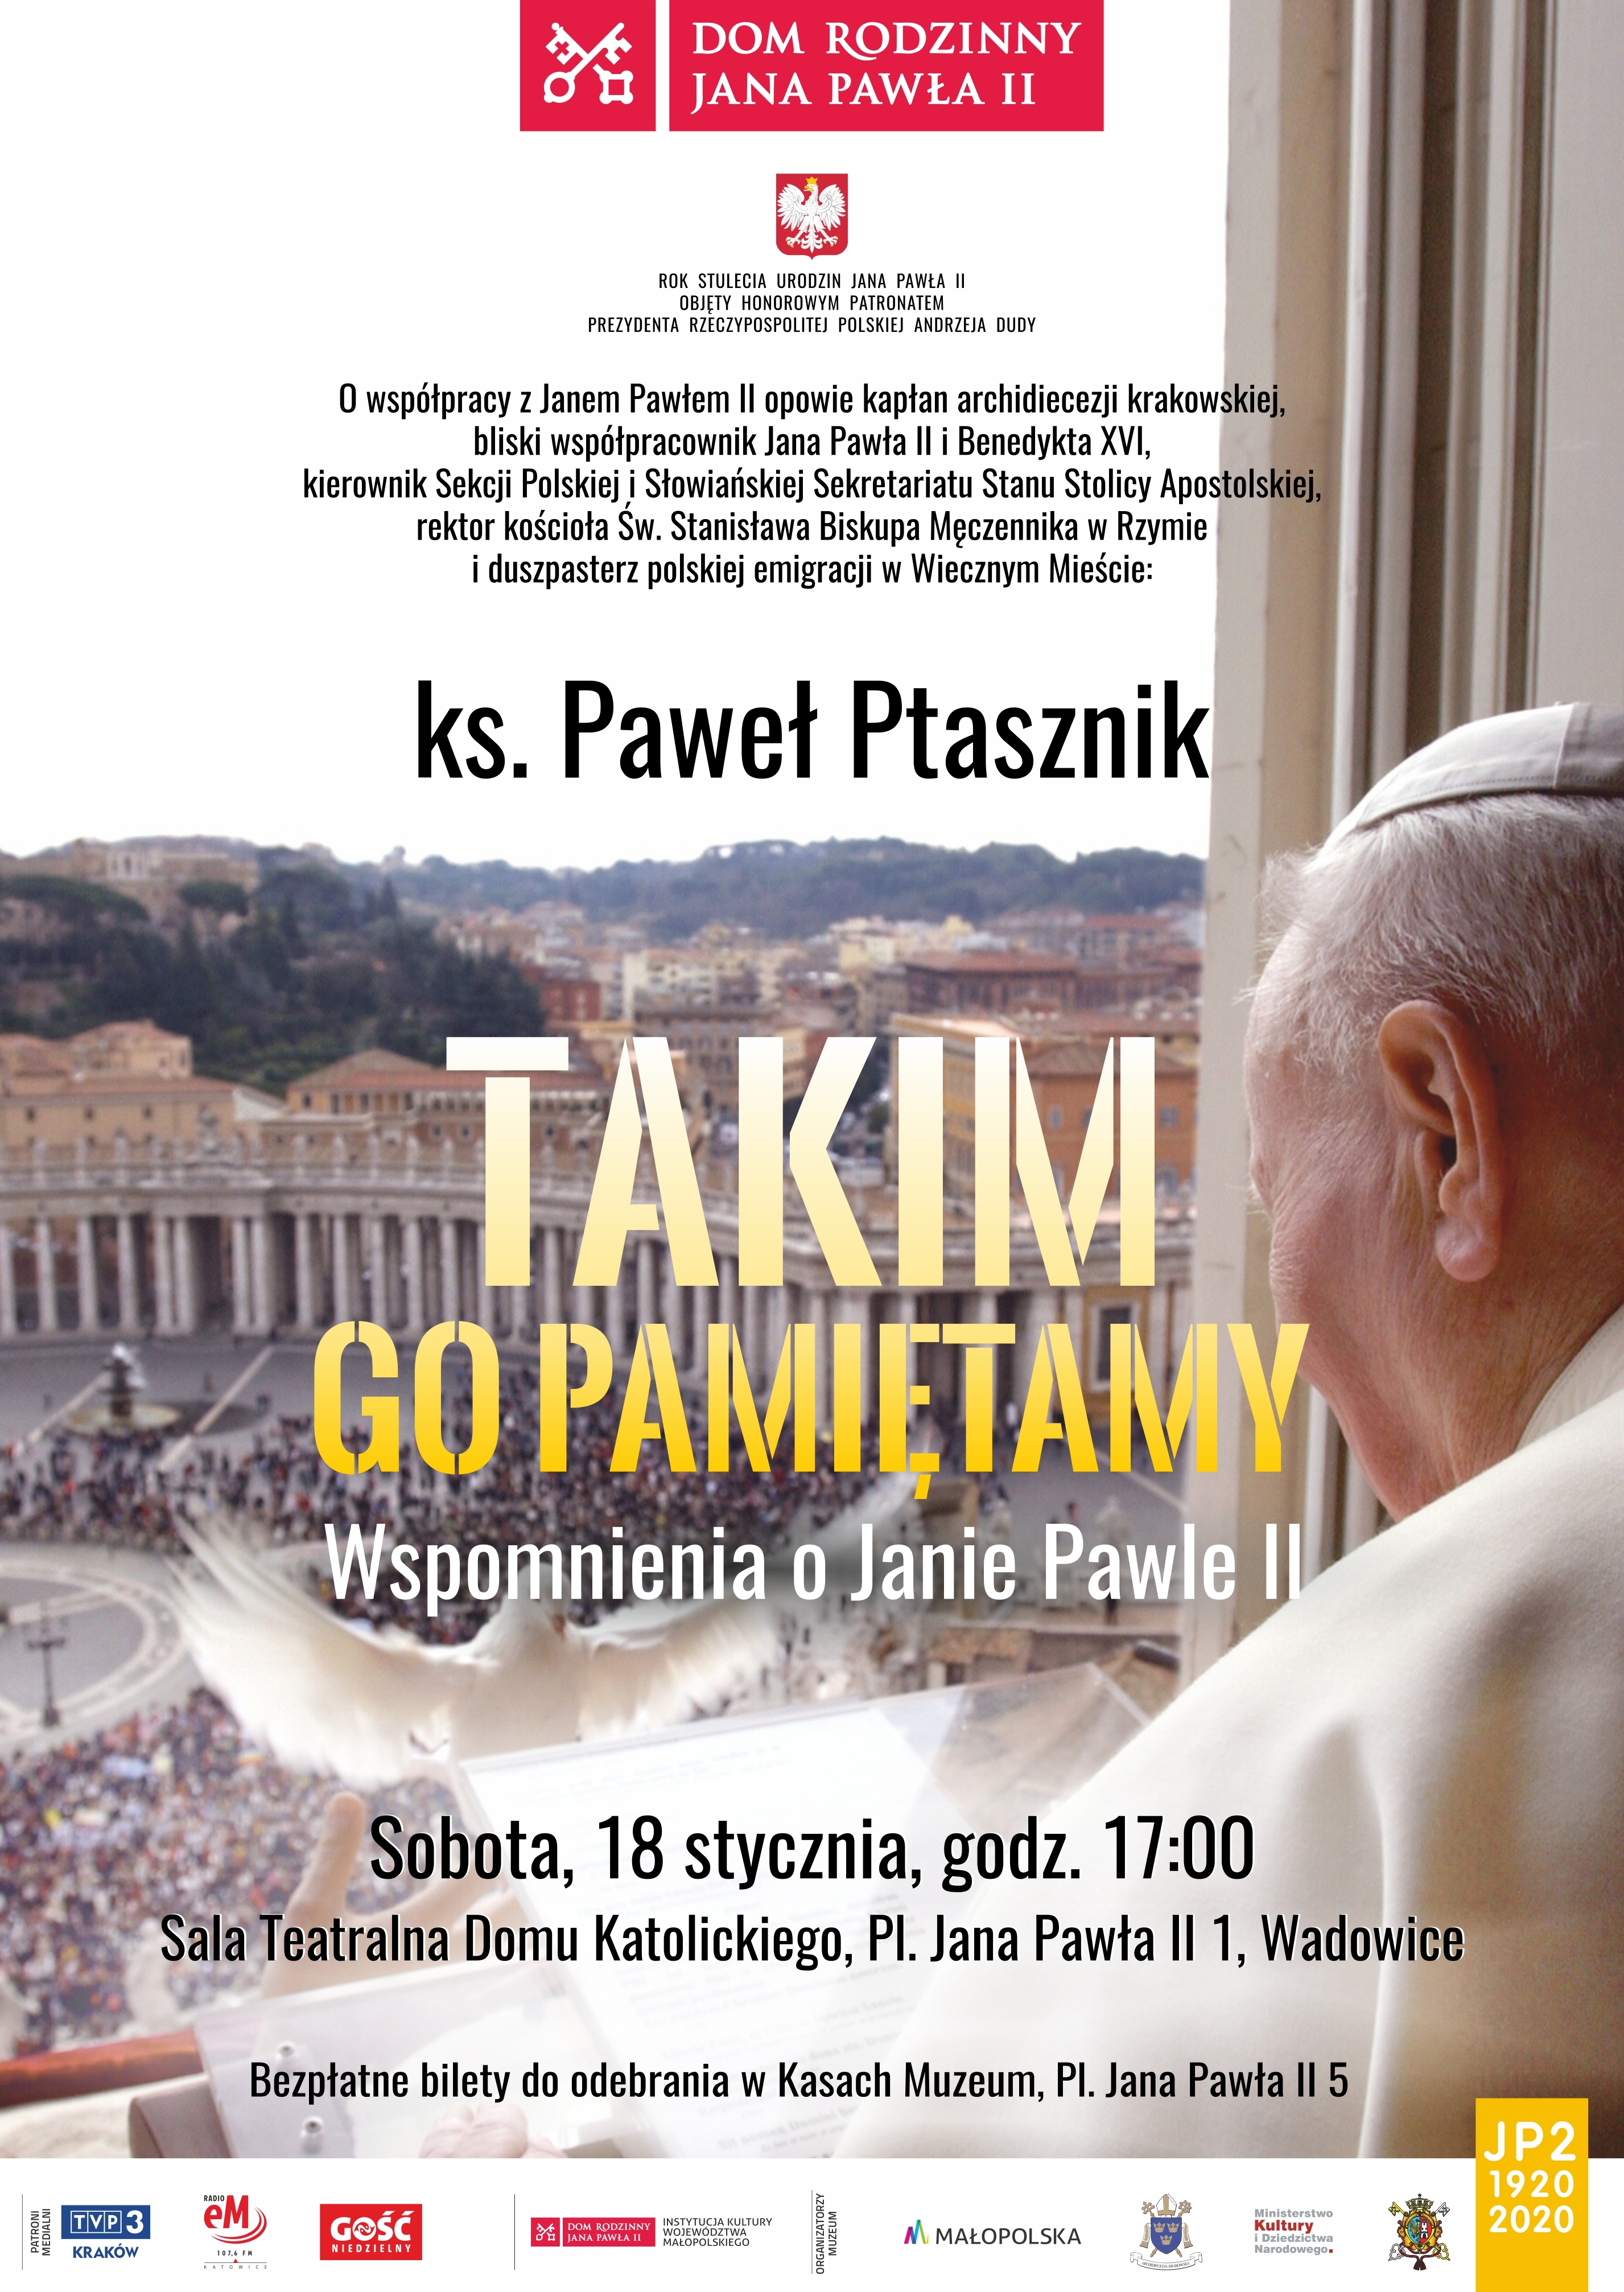 Spotkanie “Takim Go pamiętamy. Wspomnienia o Janie Pawle II” – ks. Paweł Ptasznik